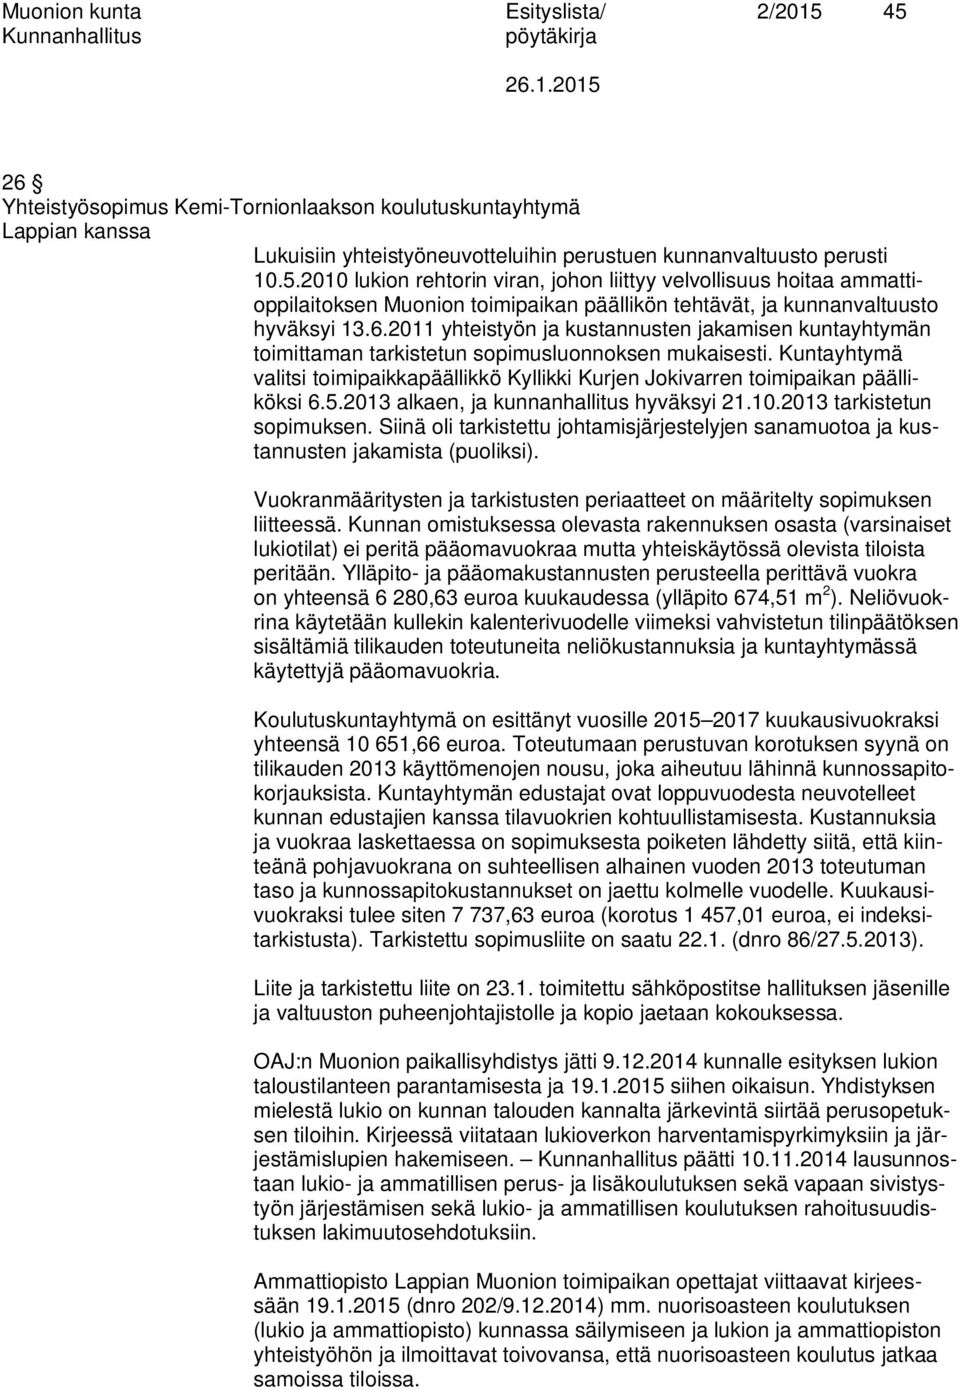 Kuntayhtymä valitsi toimipaikkapäällikkö Kyllikki Kurjen Jokivarren toimipaikan päälliköksi 6.5.2013 alkaen, ja kunnanhallitus hyväksyi 21.10.2013 tarkistetun sopimuksen.